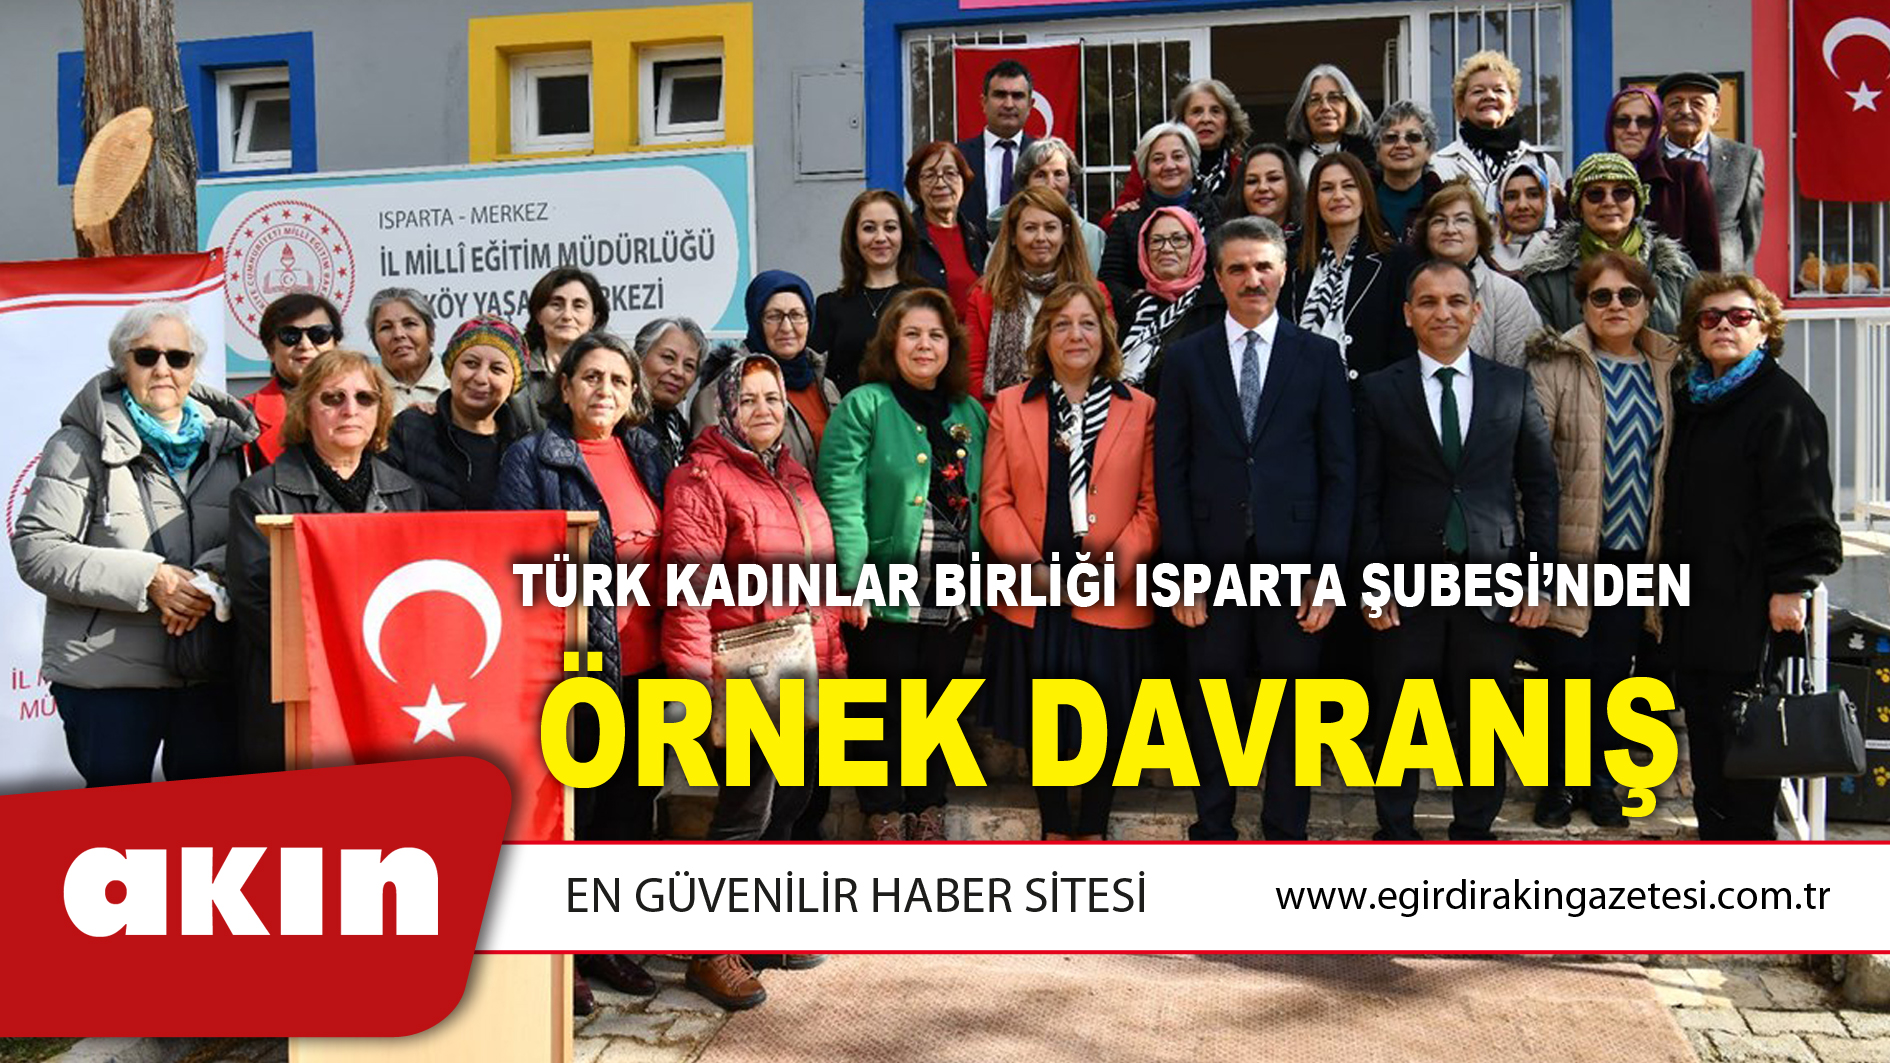 Türk Kadınlar Birliği Isparta Şubesi’nden Örnek Davranış